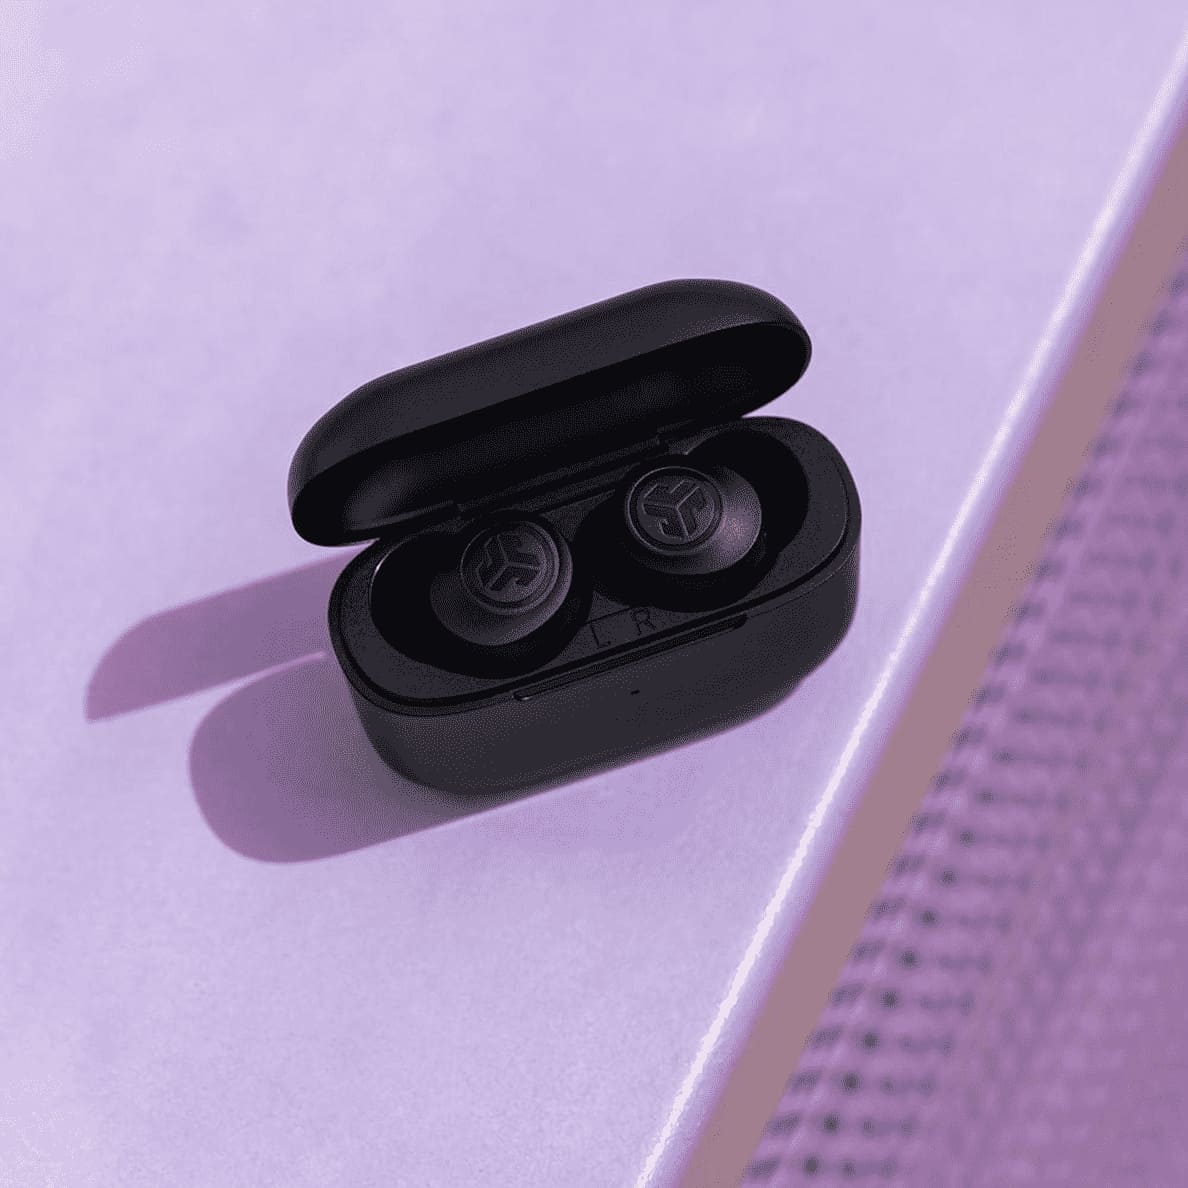 JLAB Go Air Pop True Wireless, In-ear Kopfhörer schwarz sind im offenem Ladecase liegen auf einer lila Oberfläche